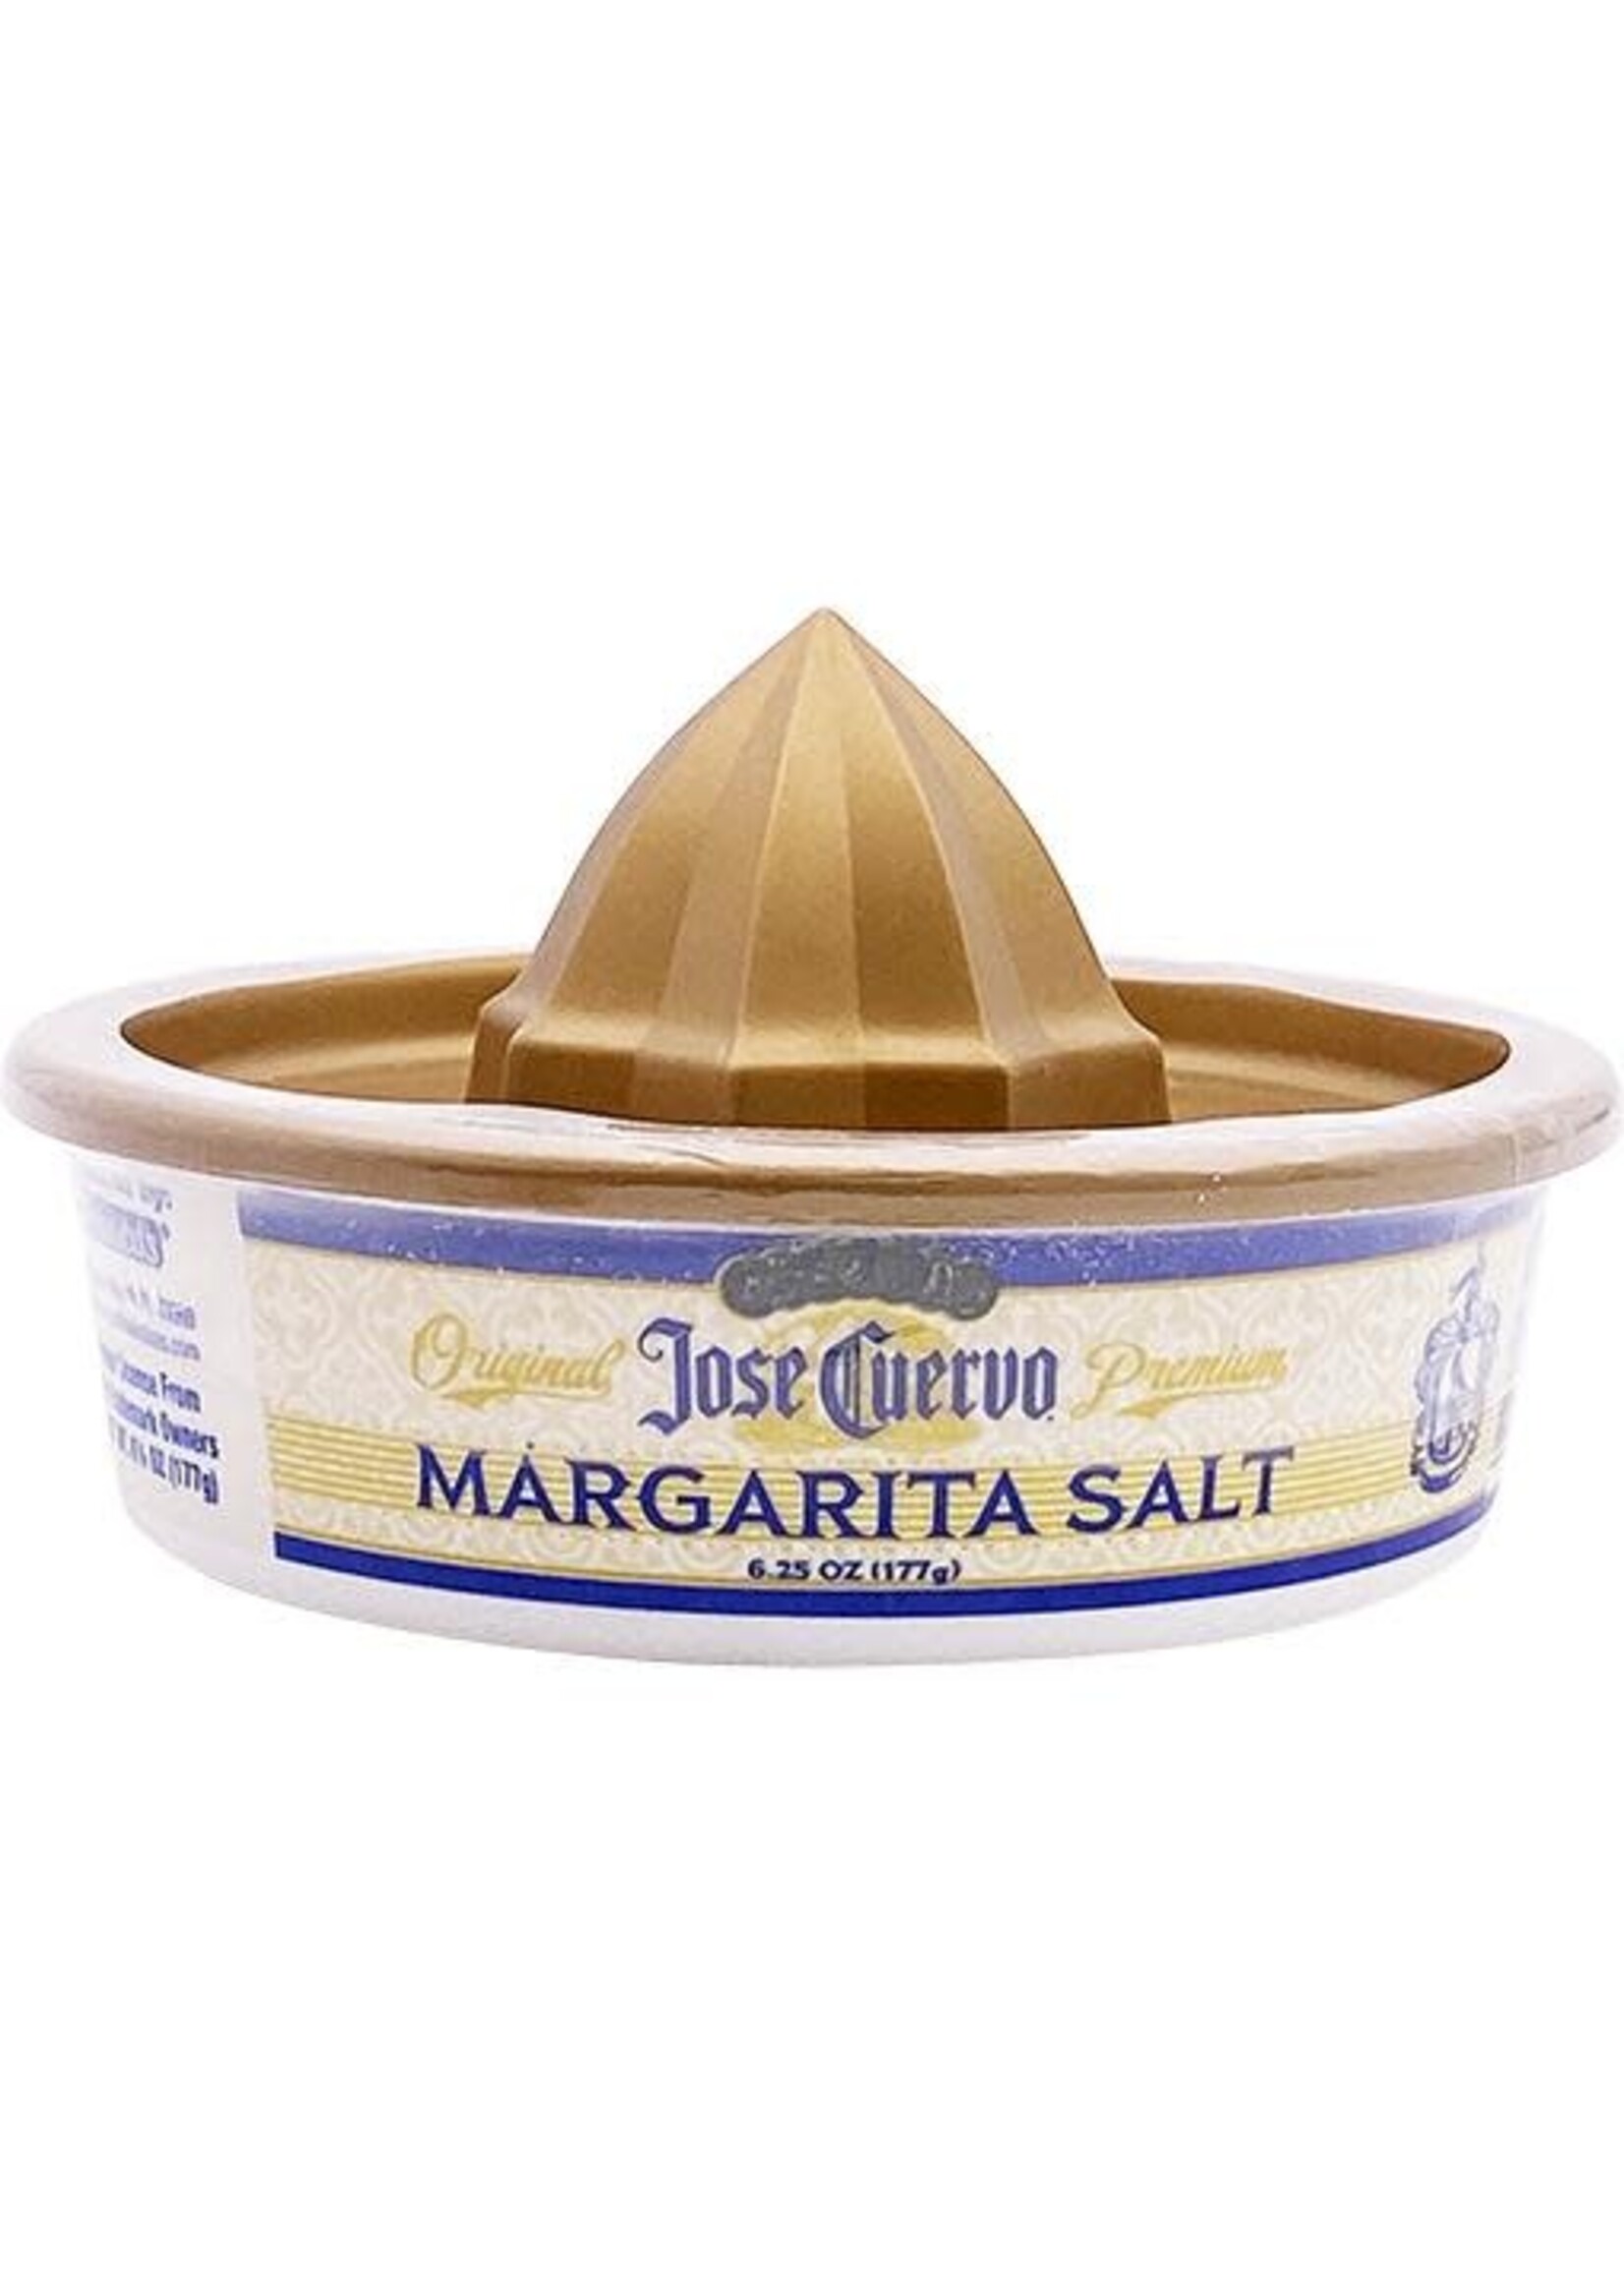 Jose Cuervo Margarita Salt 6.25 Oz